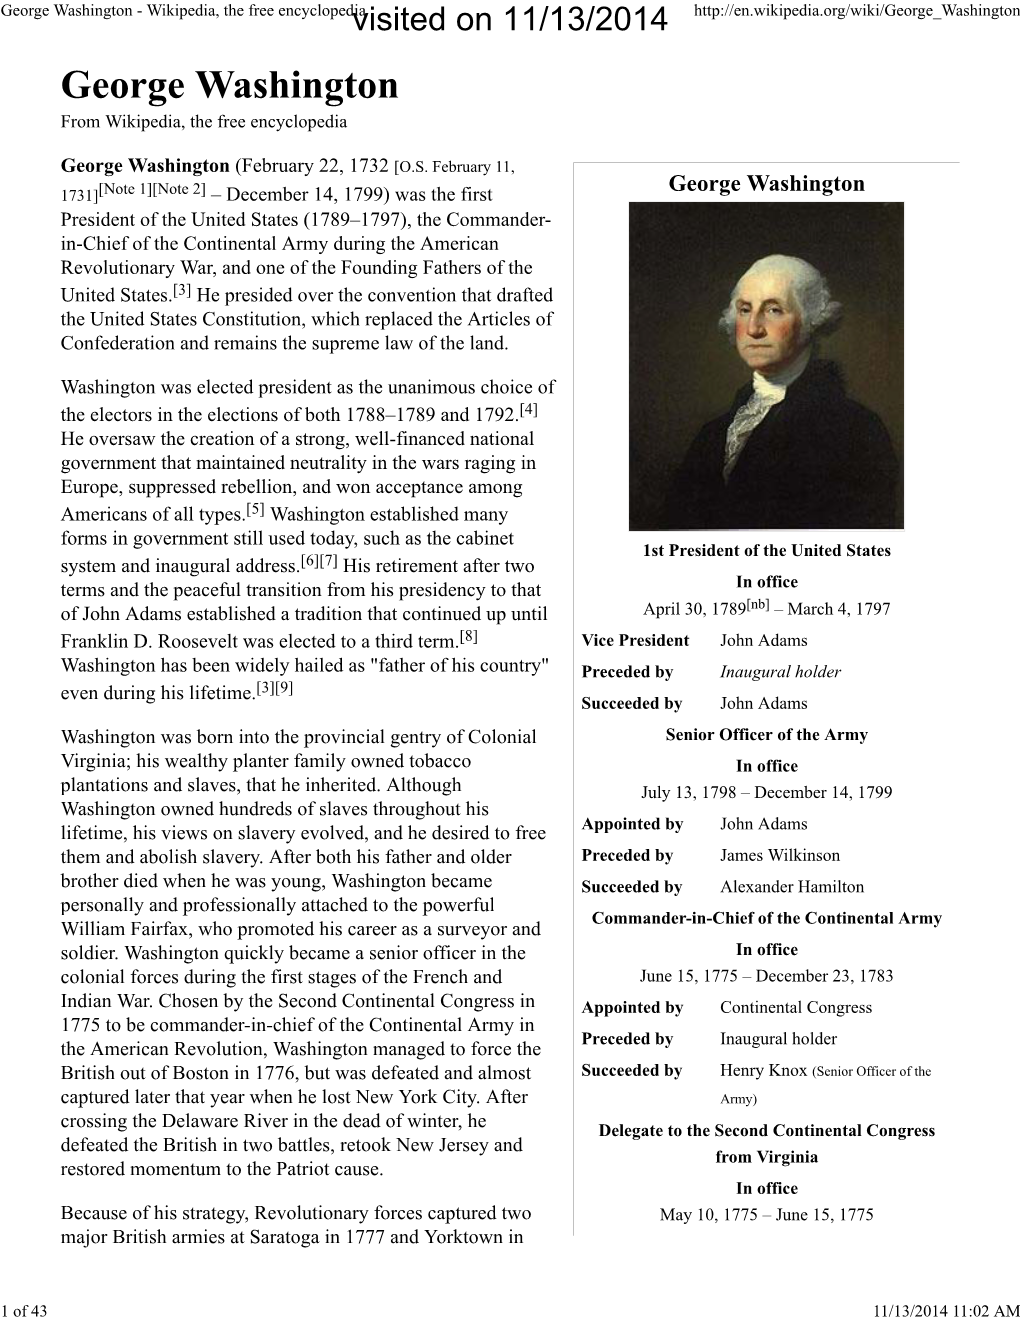 George Washington - Wikipedia, the Free Encyclopediavisited on 11/13/2014